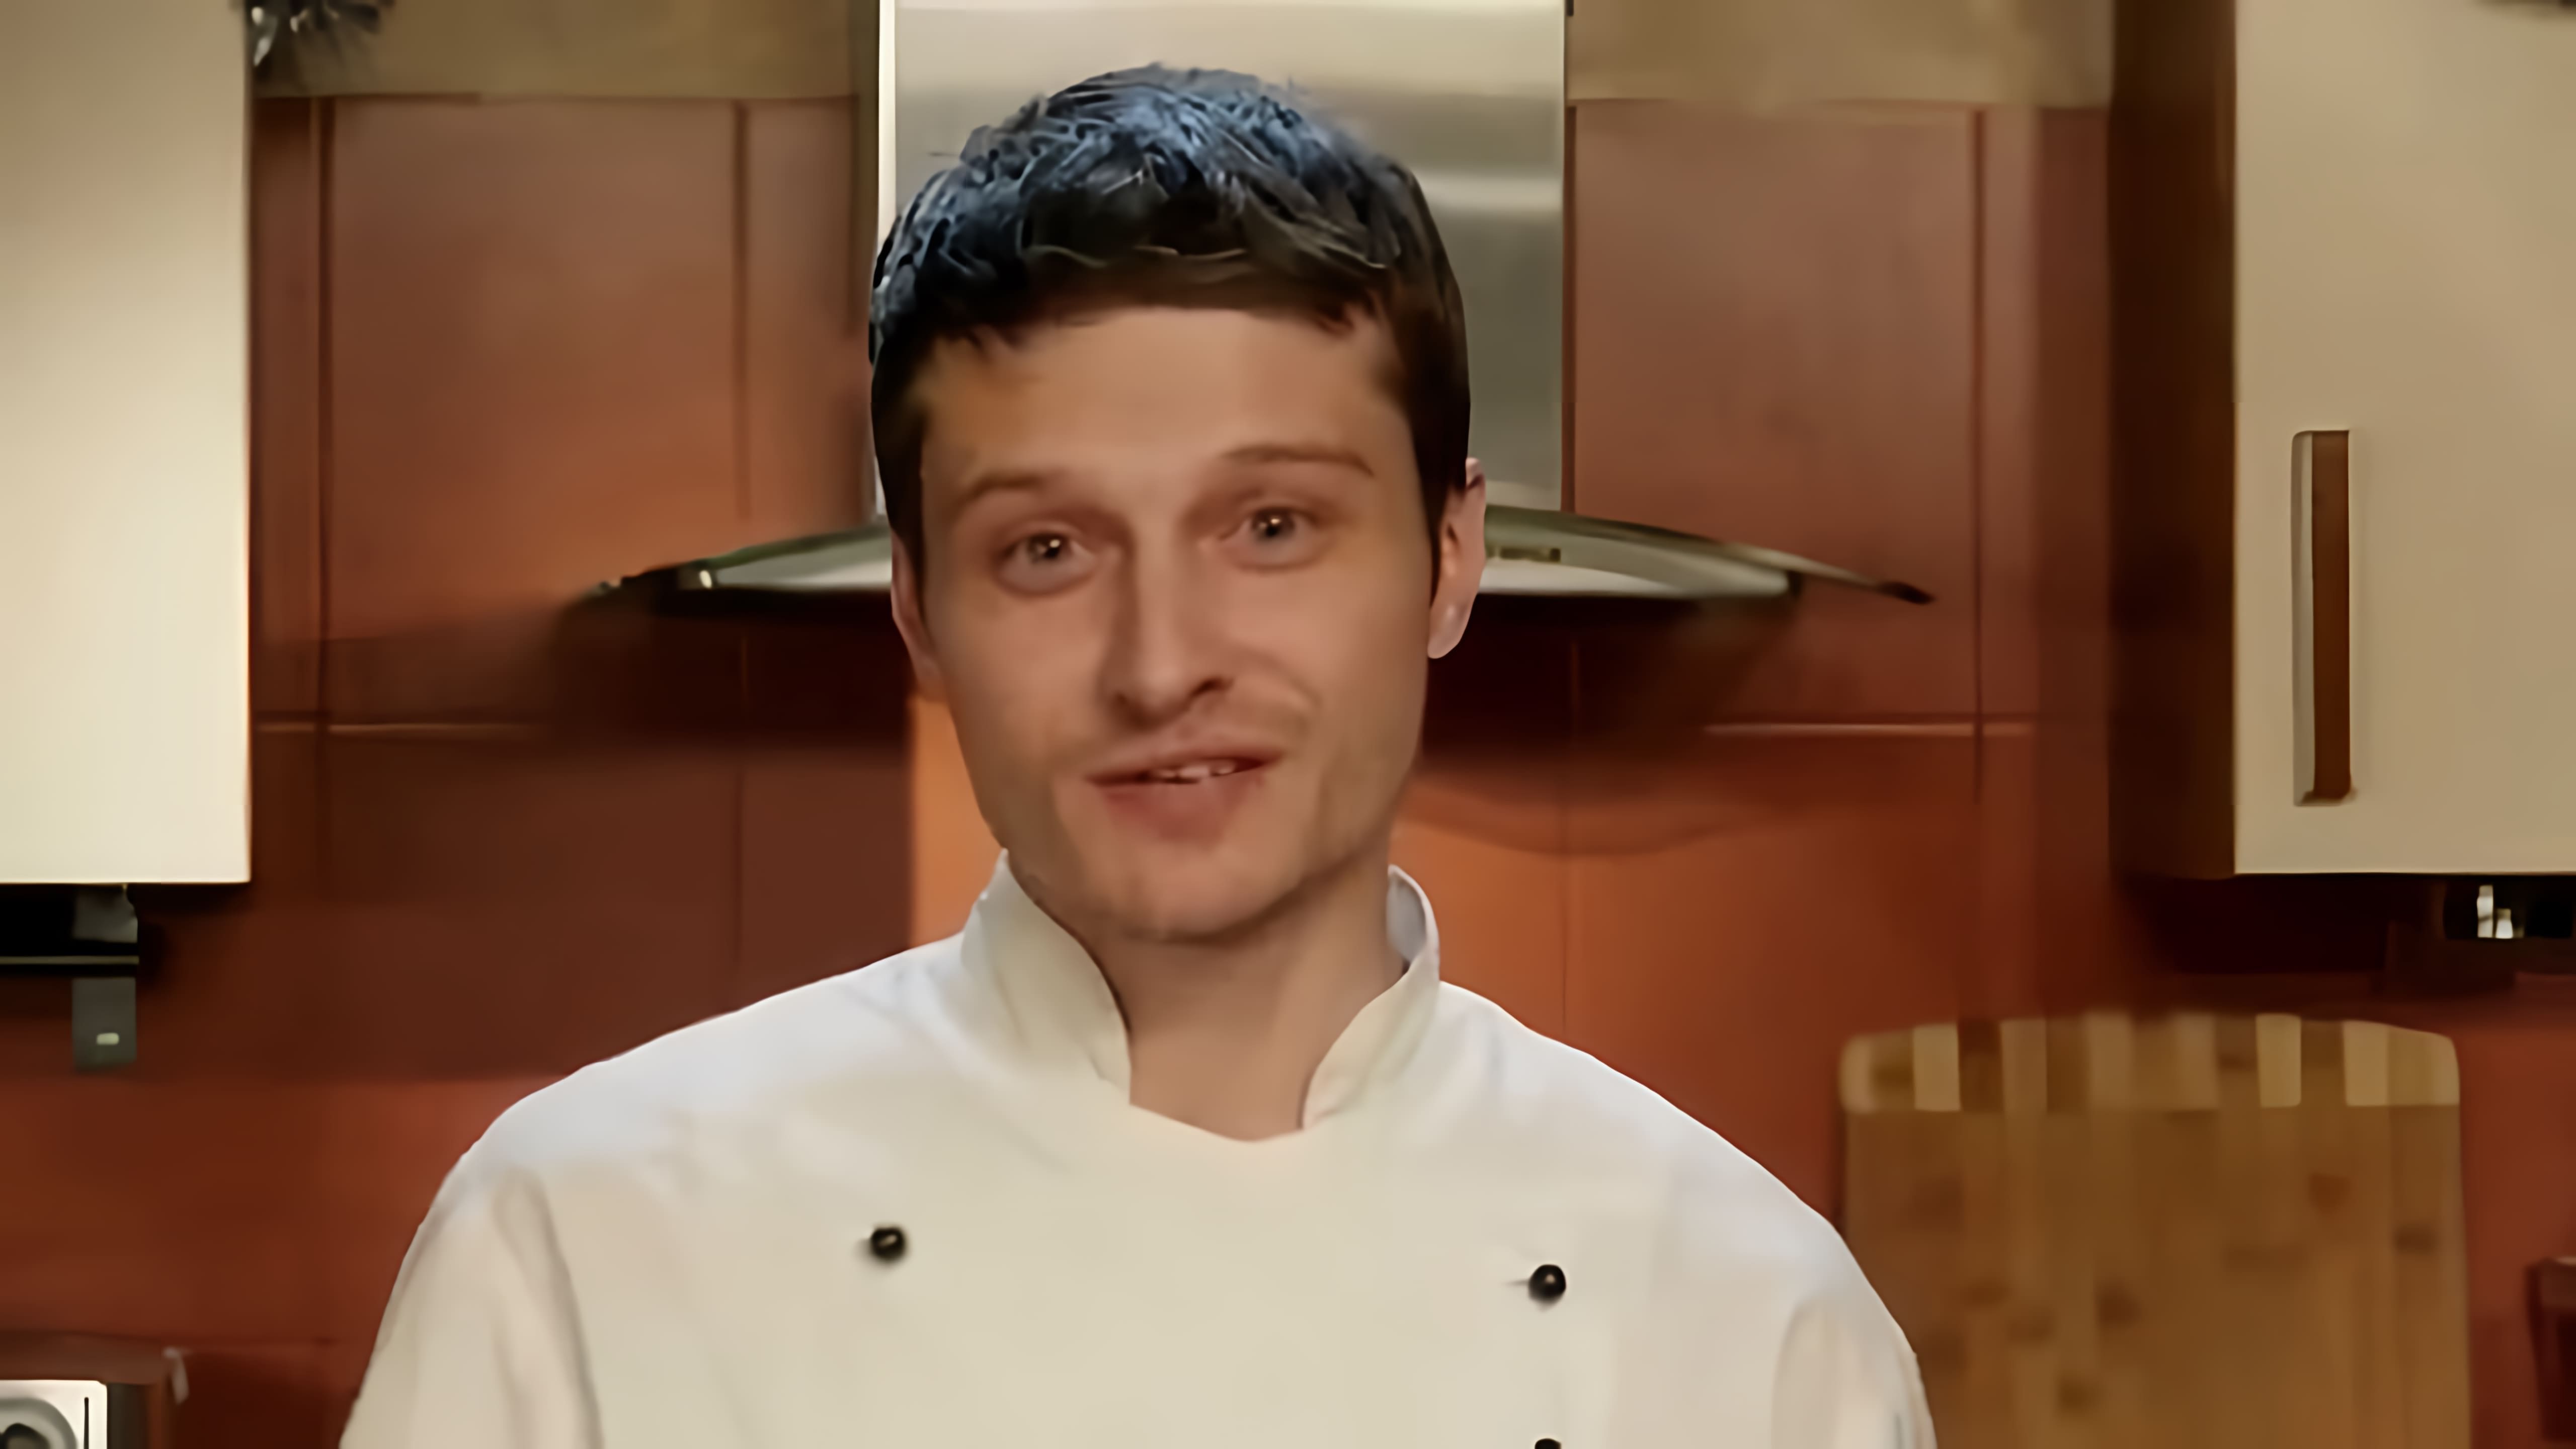 В этом видео Константин Жук показывает, как приготовить ресторанное блюдо - холодную закуску из телятины и тунца, которую итальянцы называют Вителло Тоннато